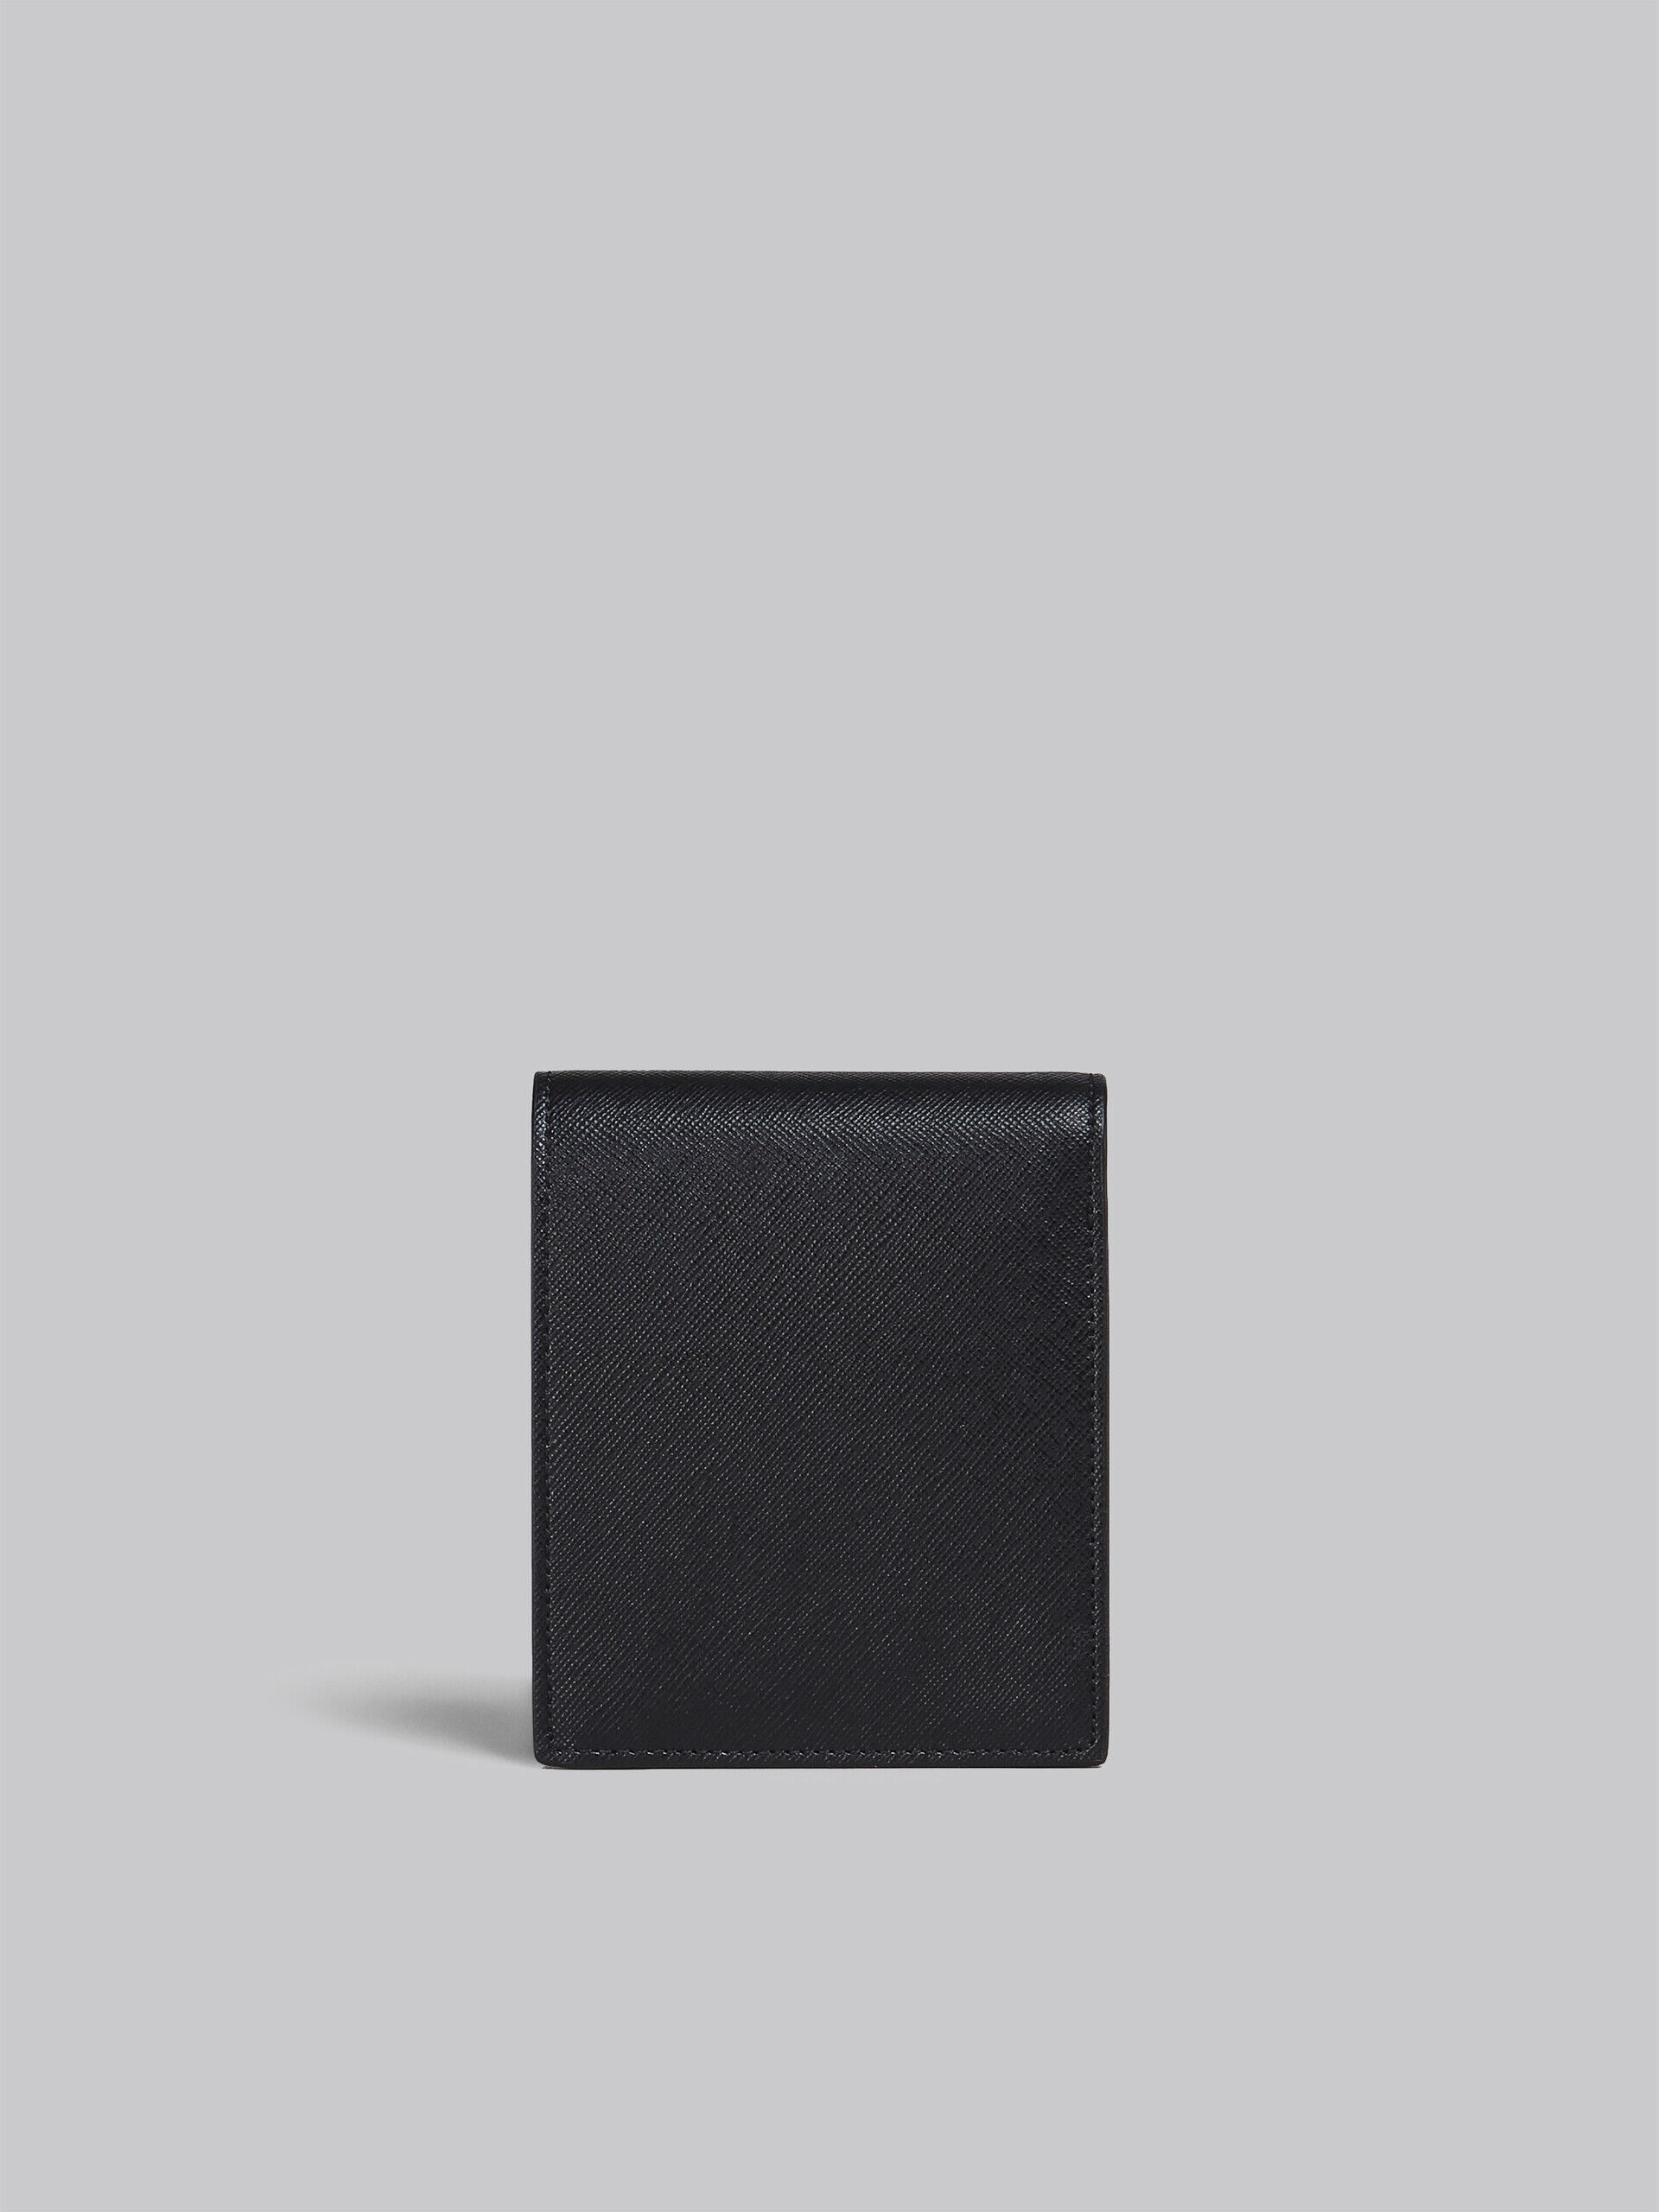 ブラック サフィアーノカーフレザー製 二つ折り財布 | Marni